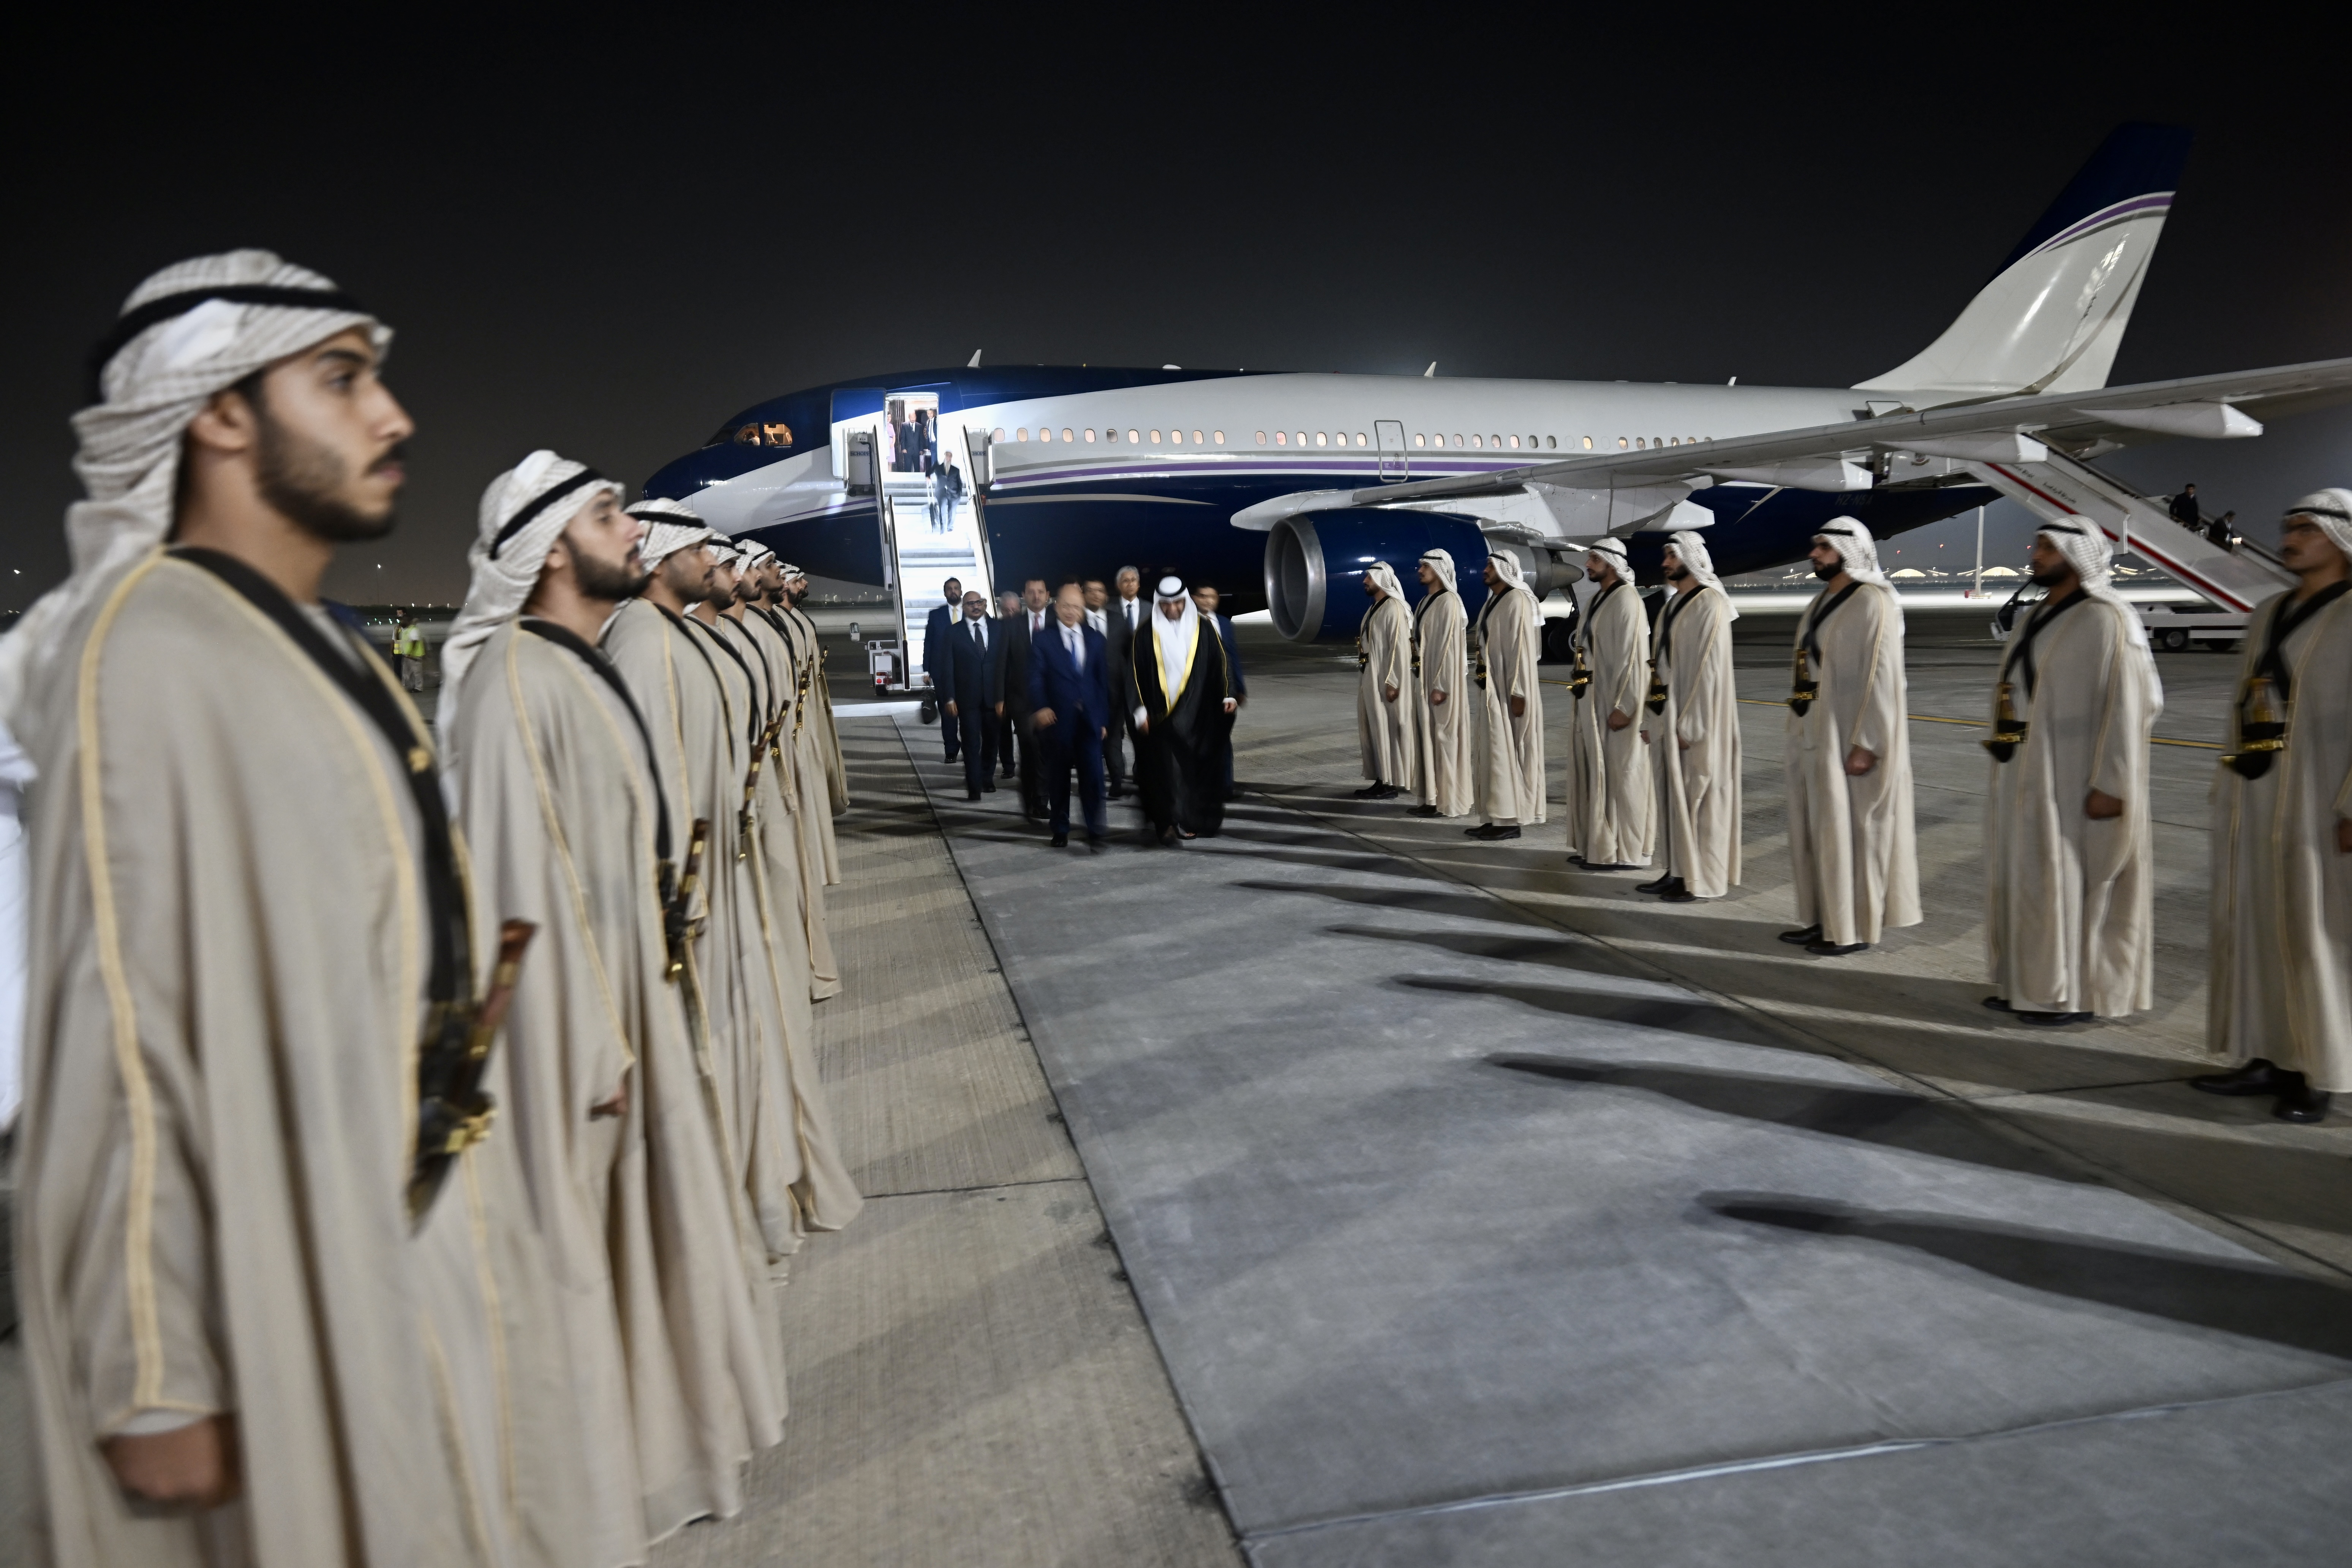 وصول فخامة الرئيس رشاد العليمي إلى العاصمة الإماراتية أبو ظبي  29 نوفمبر 2022